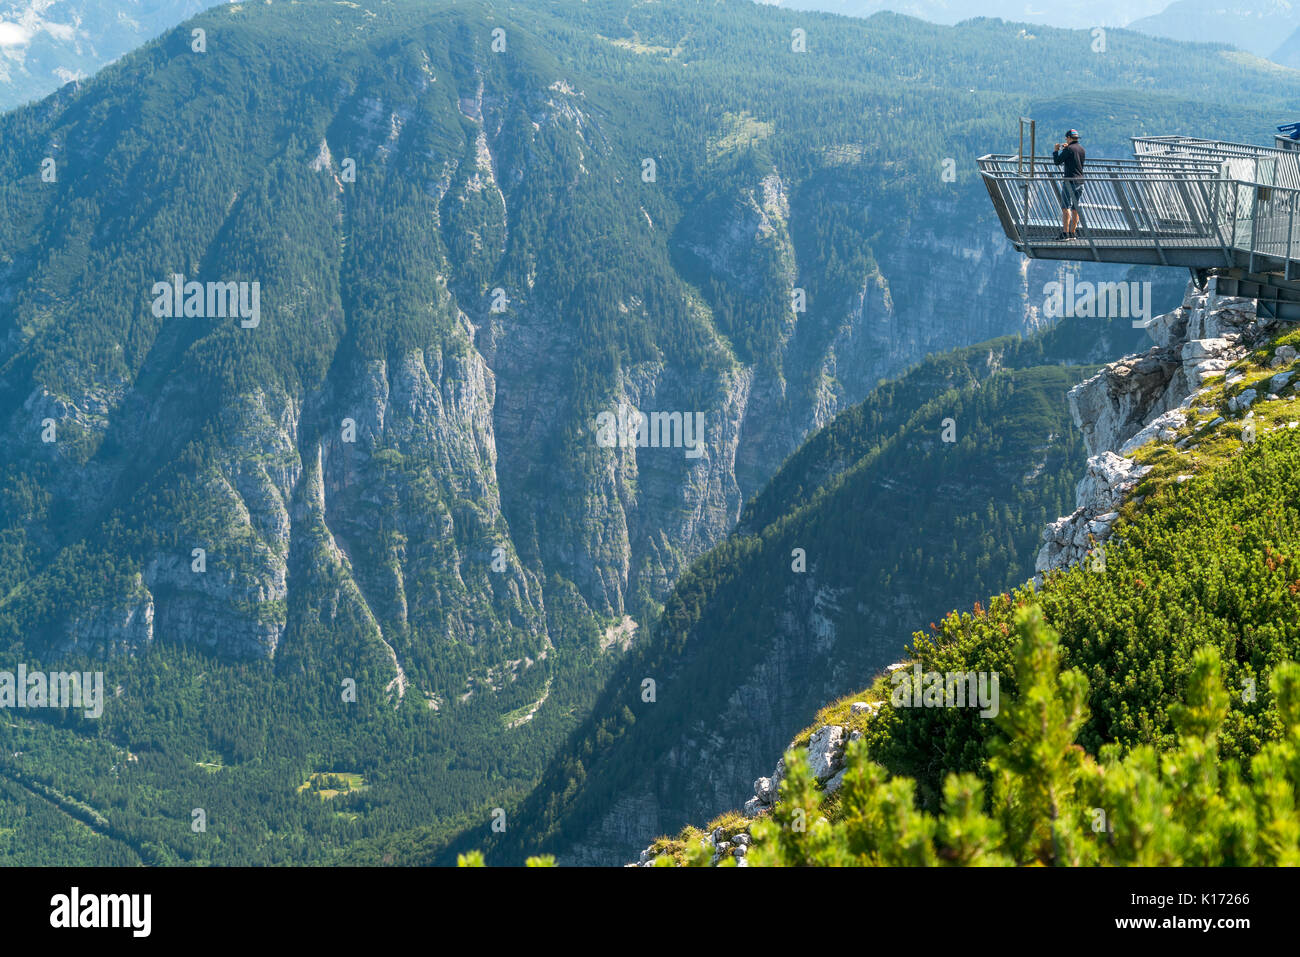 Aussichtsplattform 5fingers, Dachsteingebirge, Salzkammergut,  Österreich   |  5fingers viewing platform, Dachstein massif,  Austria Stock Photo